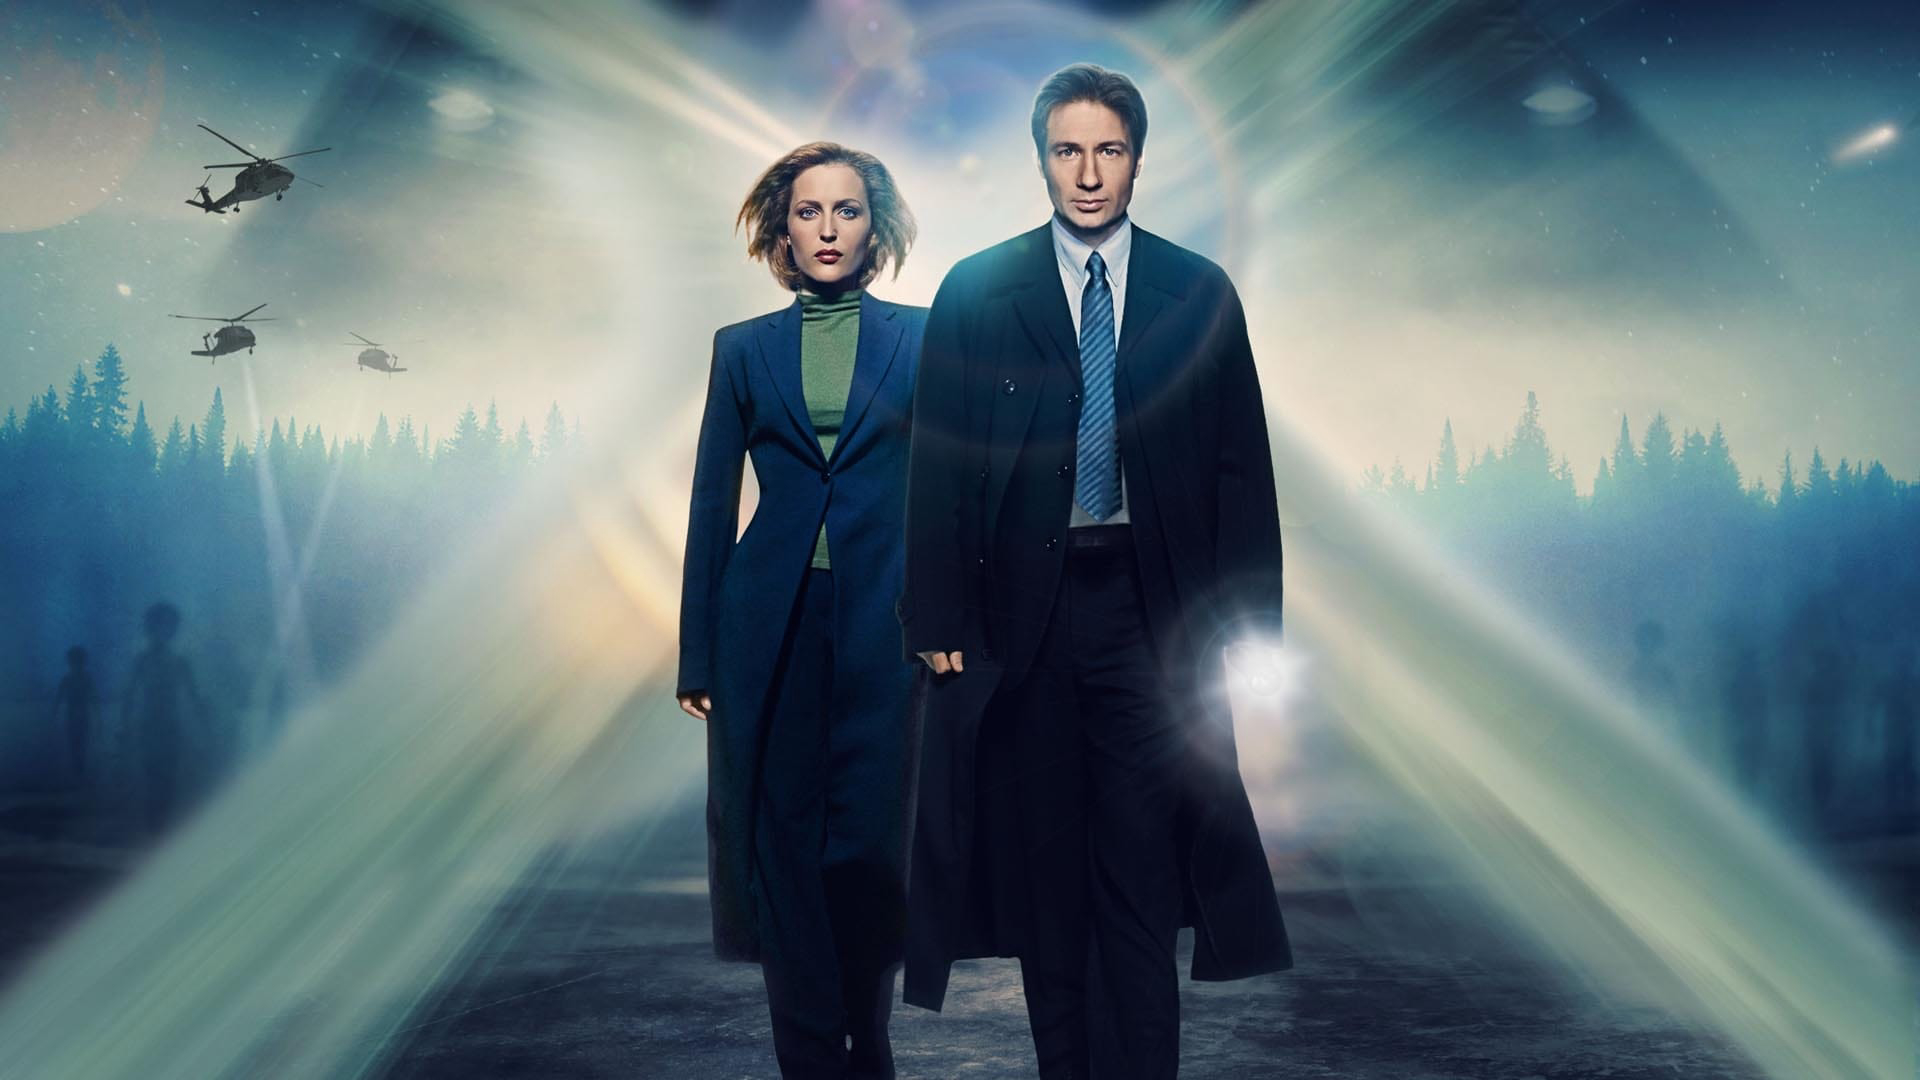 Hồ Sơ Tuyệt Mật (Phần 10) The X-Files (Season 10)